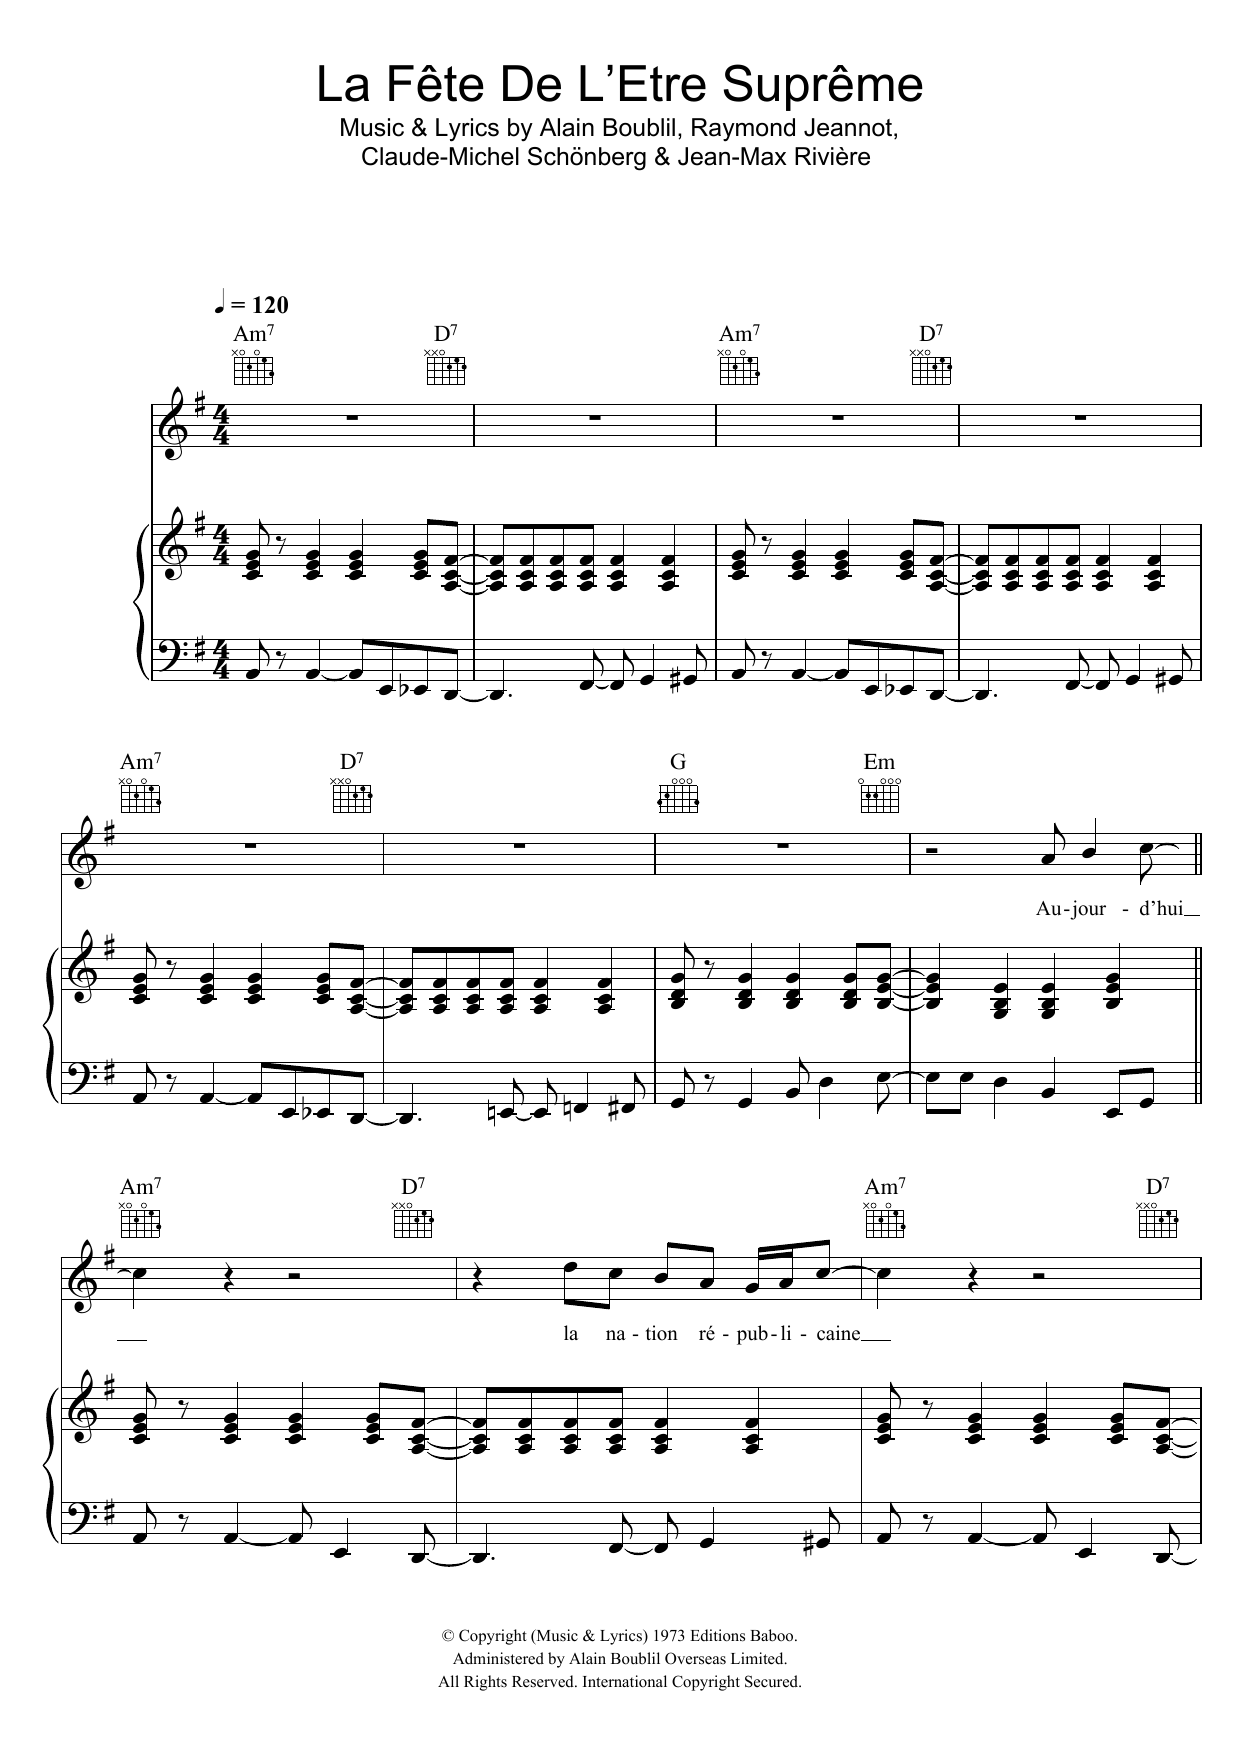 Claude-Michel Schonberg La Fete De L'Etre Supreme sheet music notes and chords arranged for Piano, Vocal & Guitar Chords